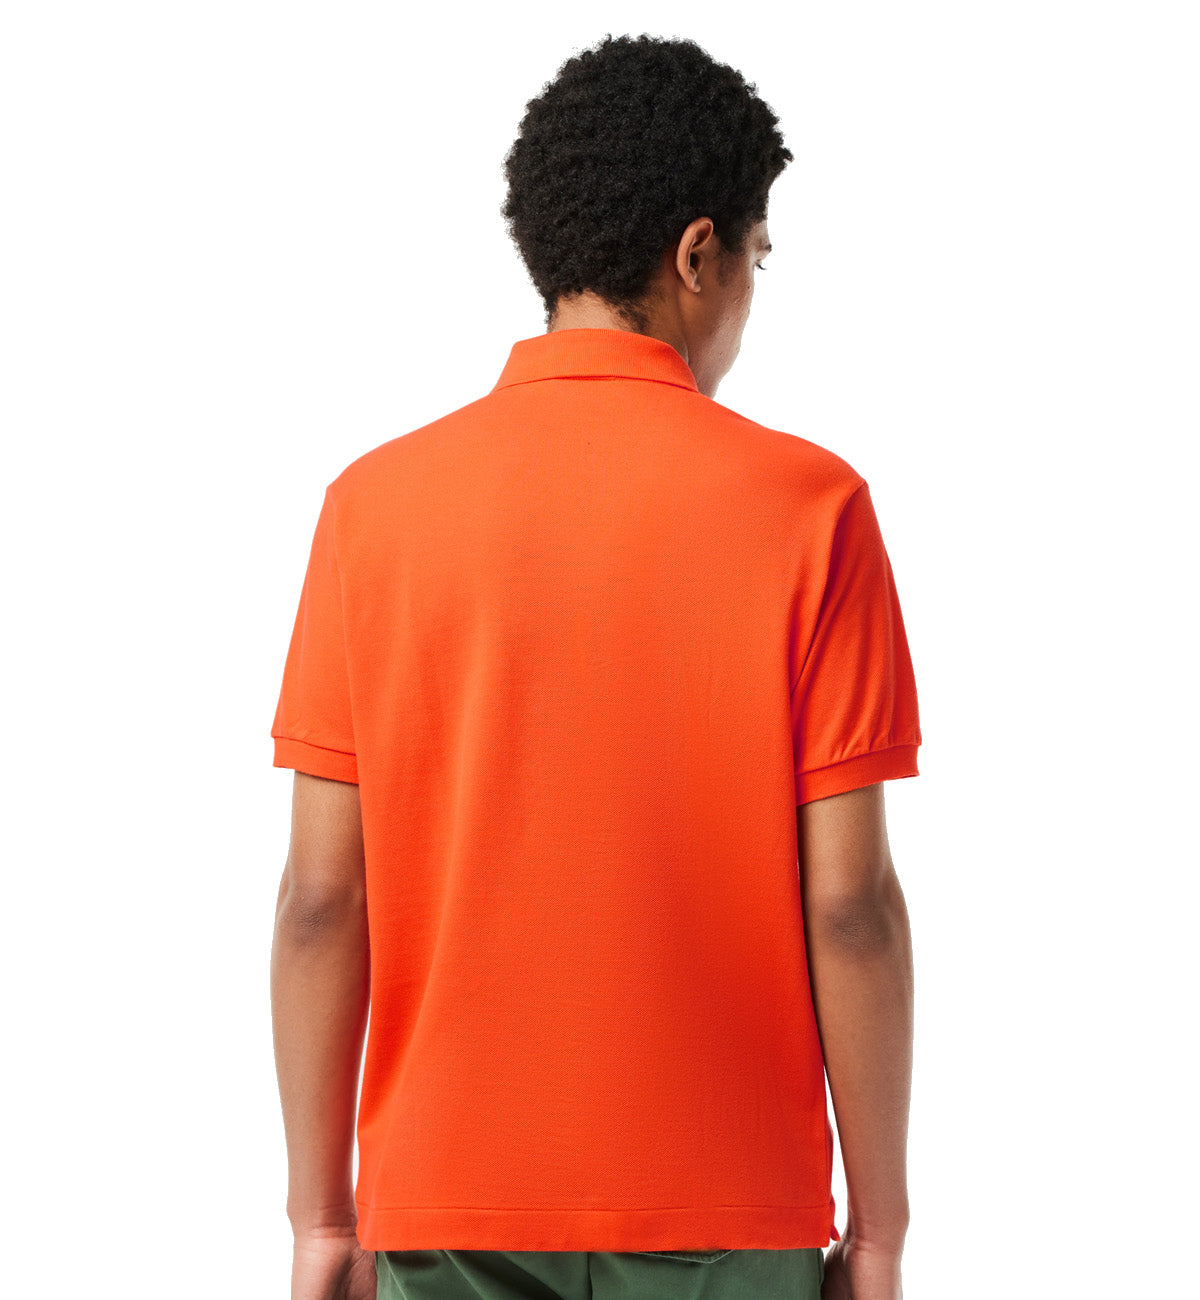 Lacoste Classic Fit Cotton Polo Shirt (Orange)